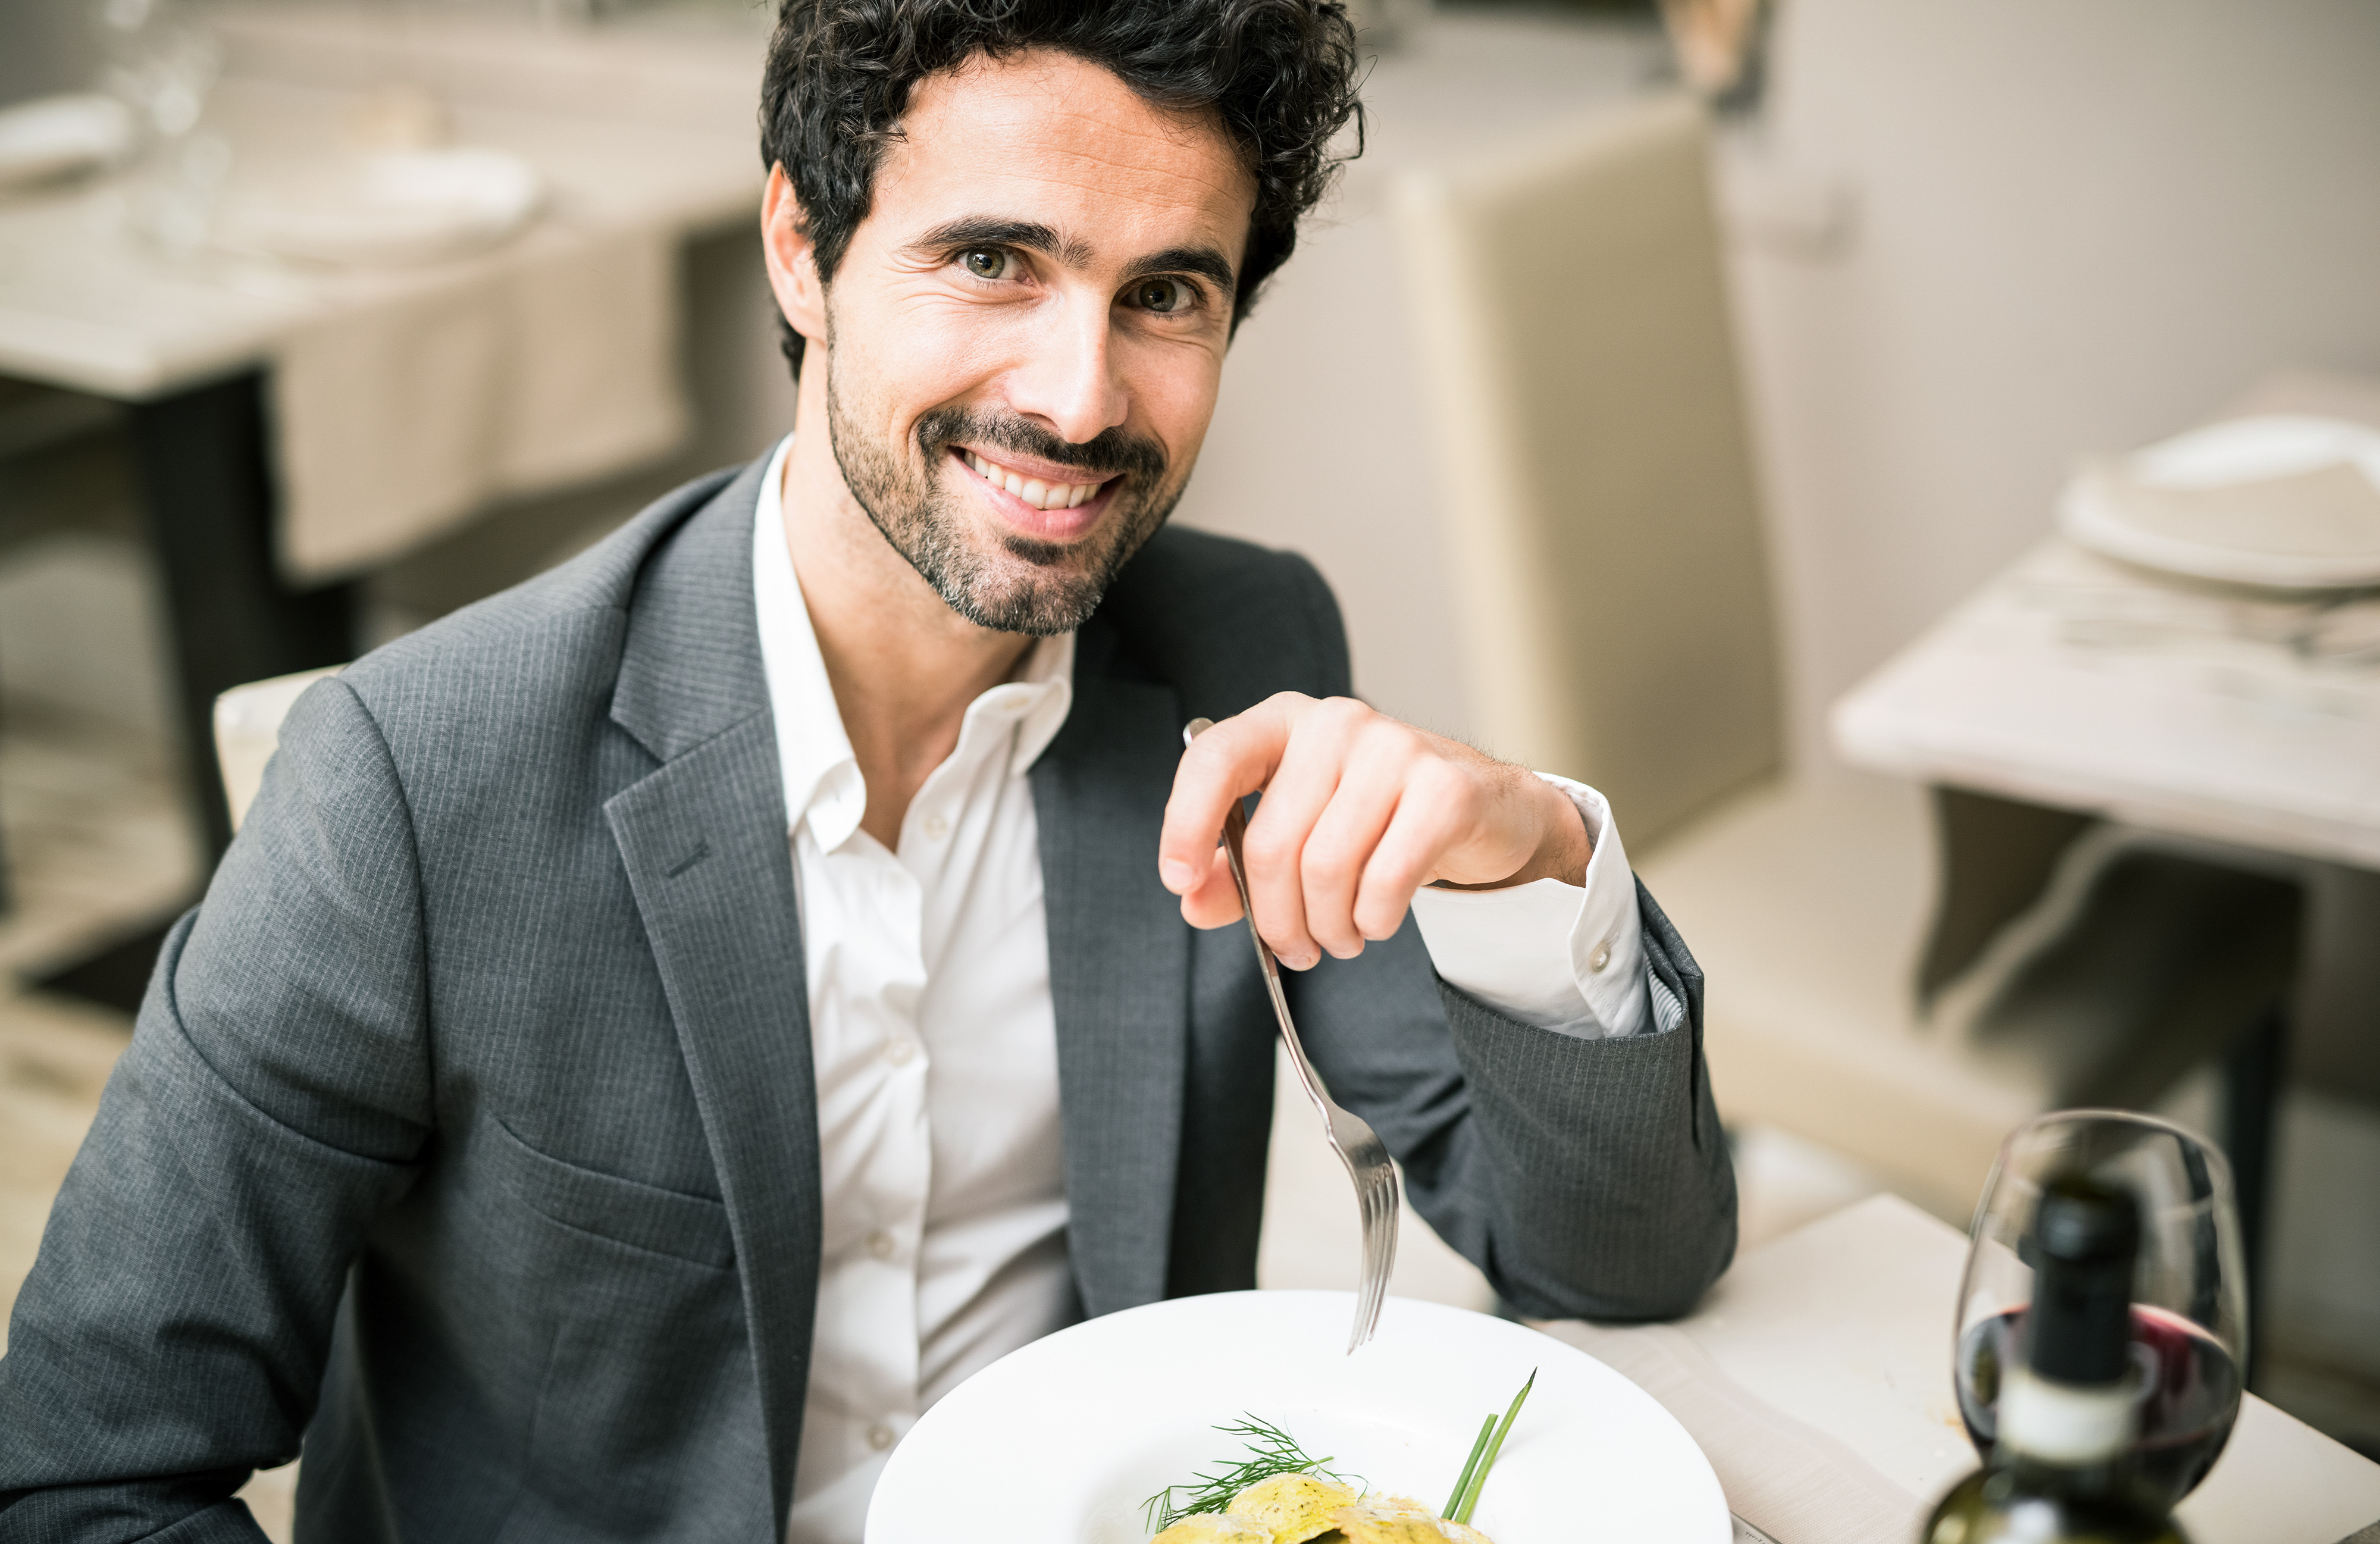 Mann beim Mittagessen in einem Restaurant | Quelle: Shutterstock